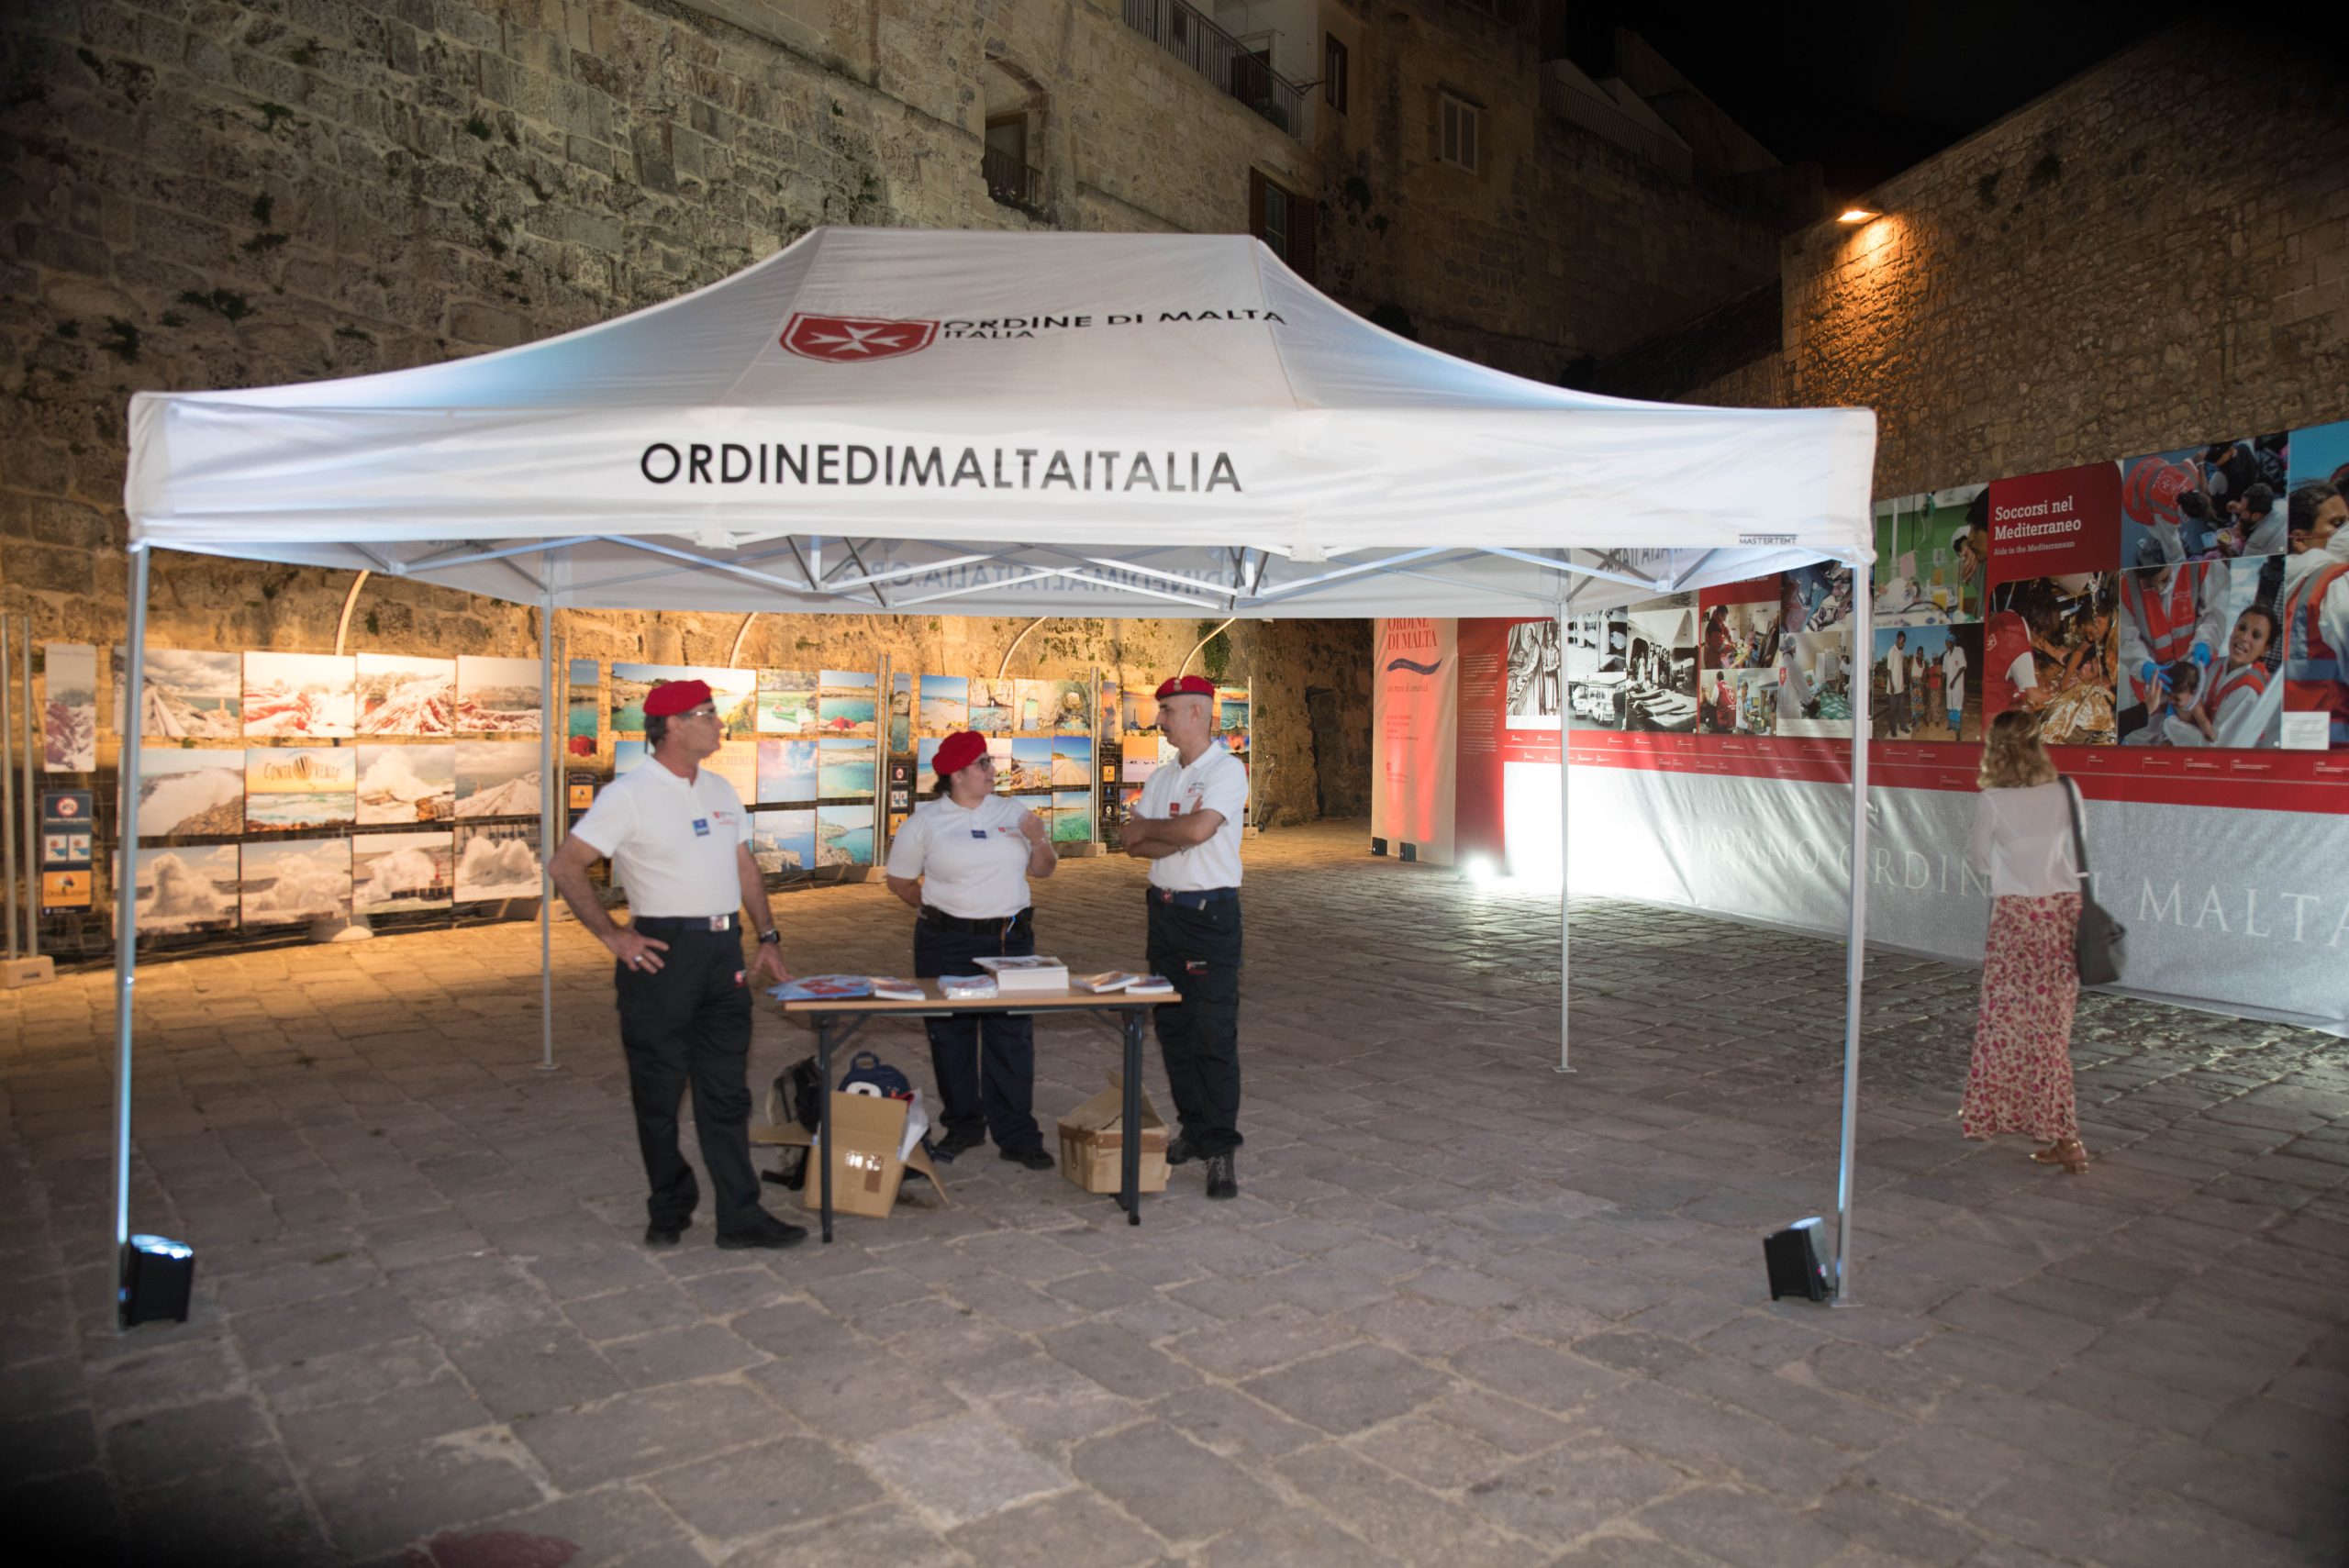 L’Ordre de Malte au Festival des journalistes méditerranéens à Otrante